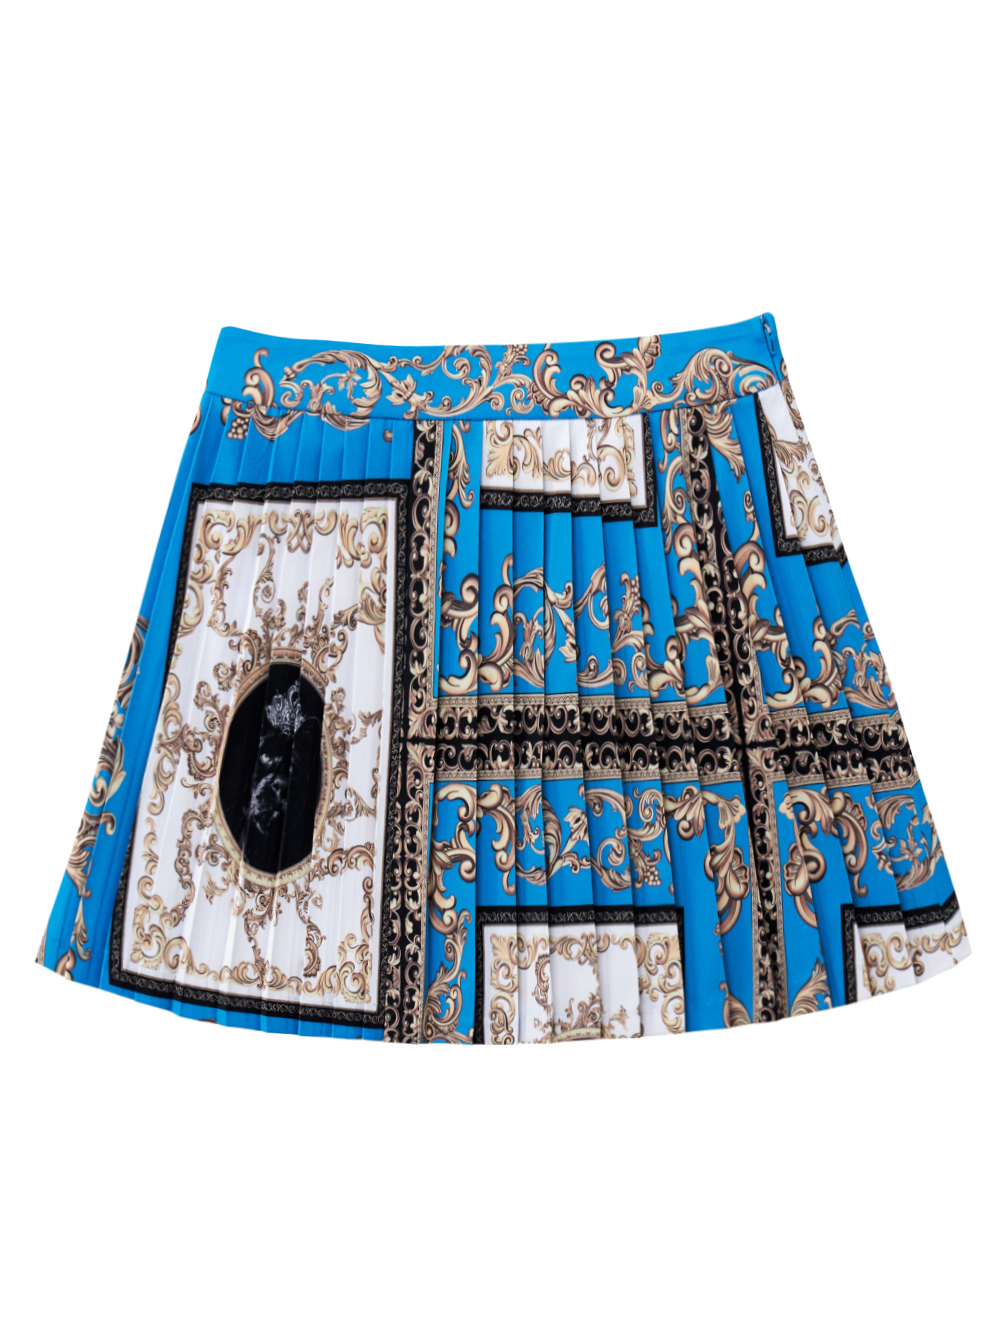 UTAA Buckingham Short Skirt : Blue (UB2SKF270BL)